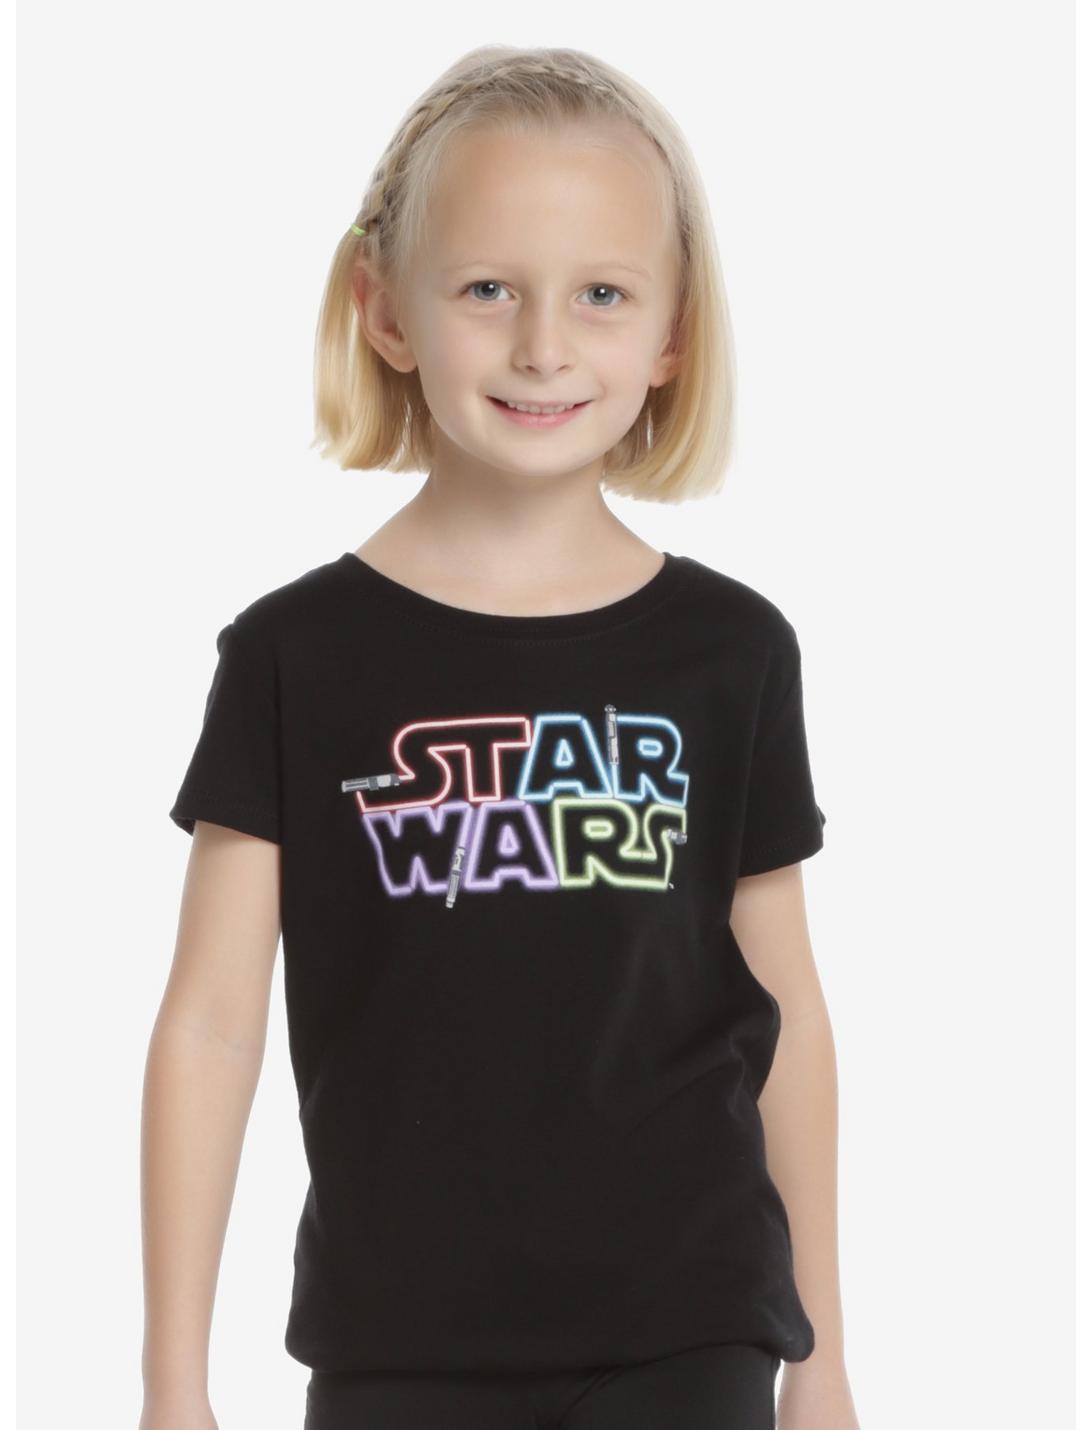 Star Wars Lightsaber Light Up Logo Youth T-Shirt, BLACK, hi-res